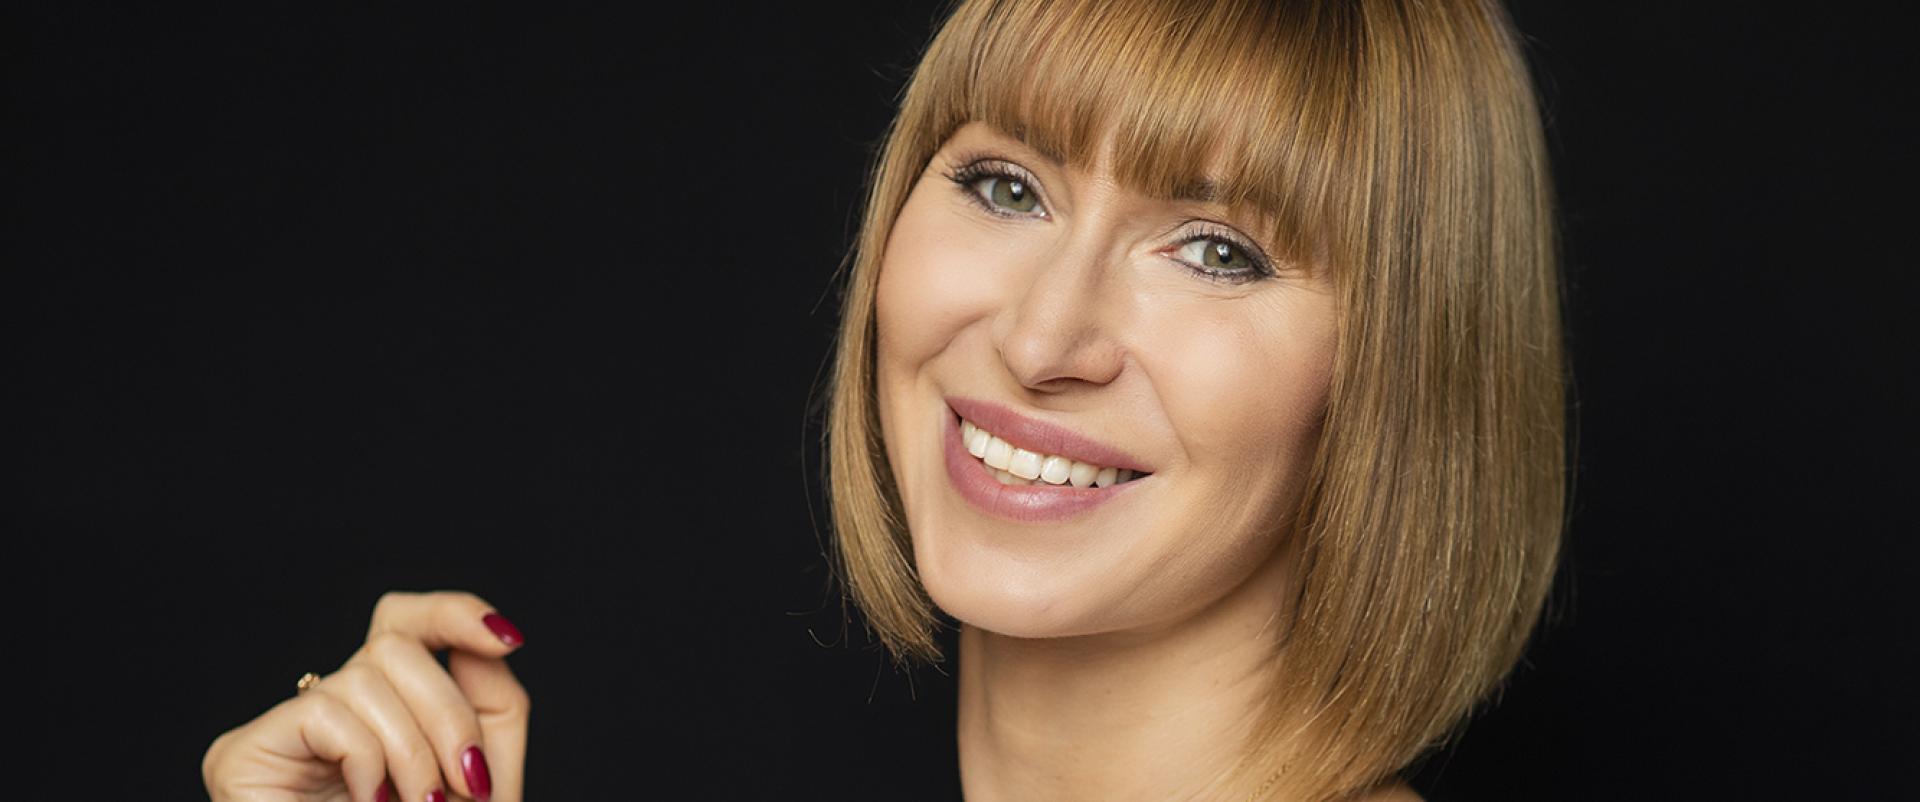 Anna Rutkowska-Didiuk: jesteśmy kobiecą firmą, ale doceniamy bardzo męski pierwiastek w Mokosh Cosmetics